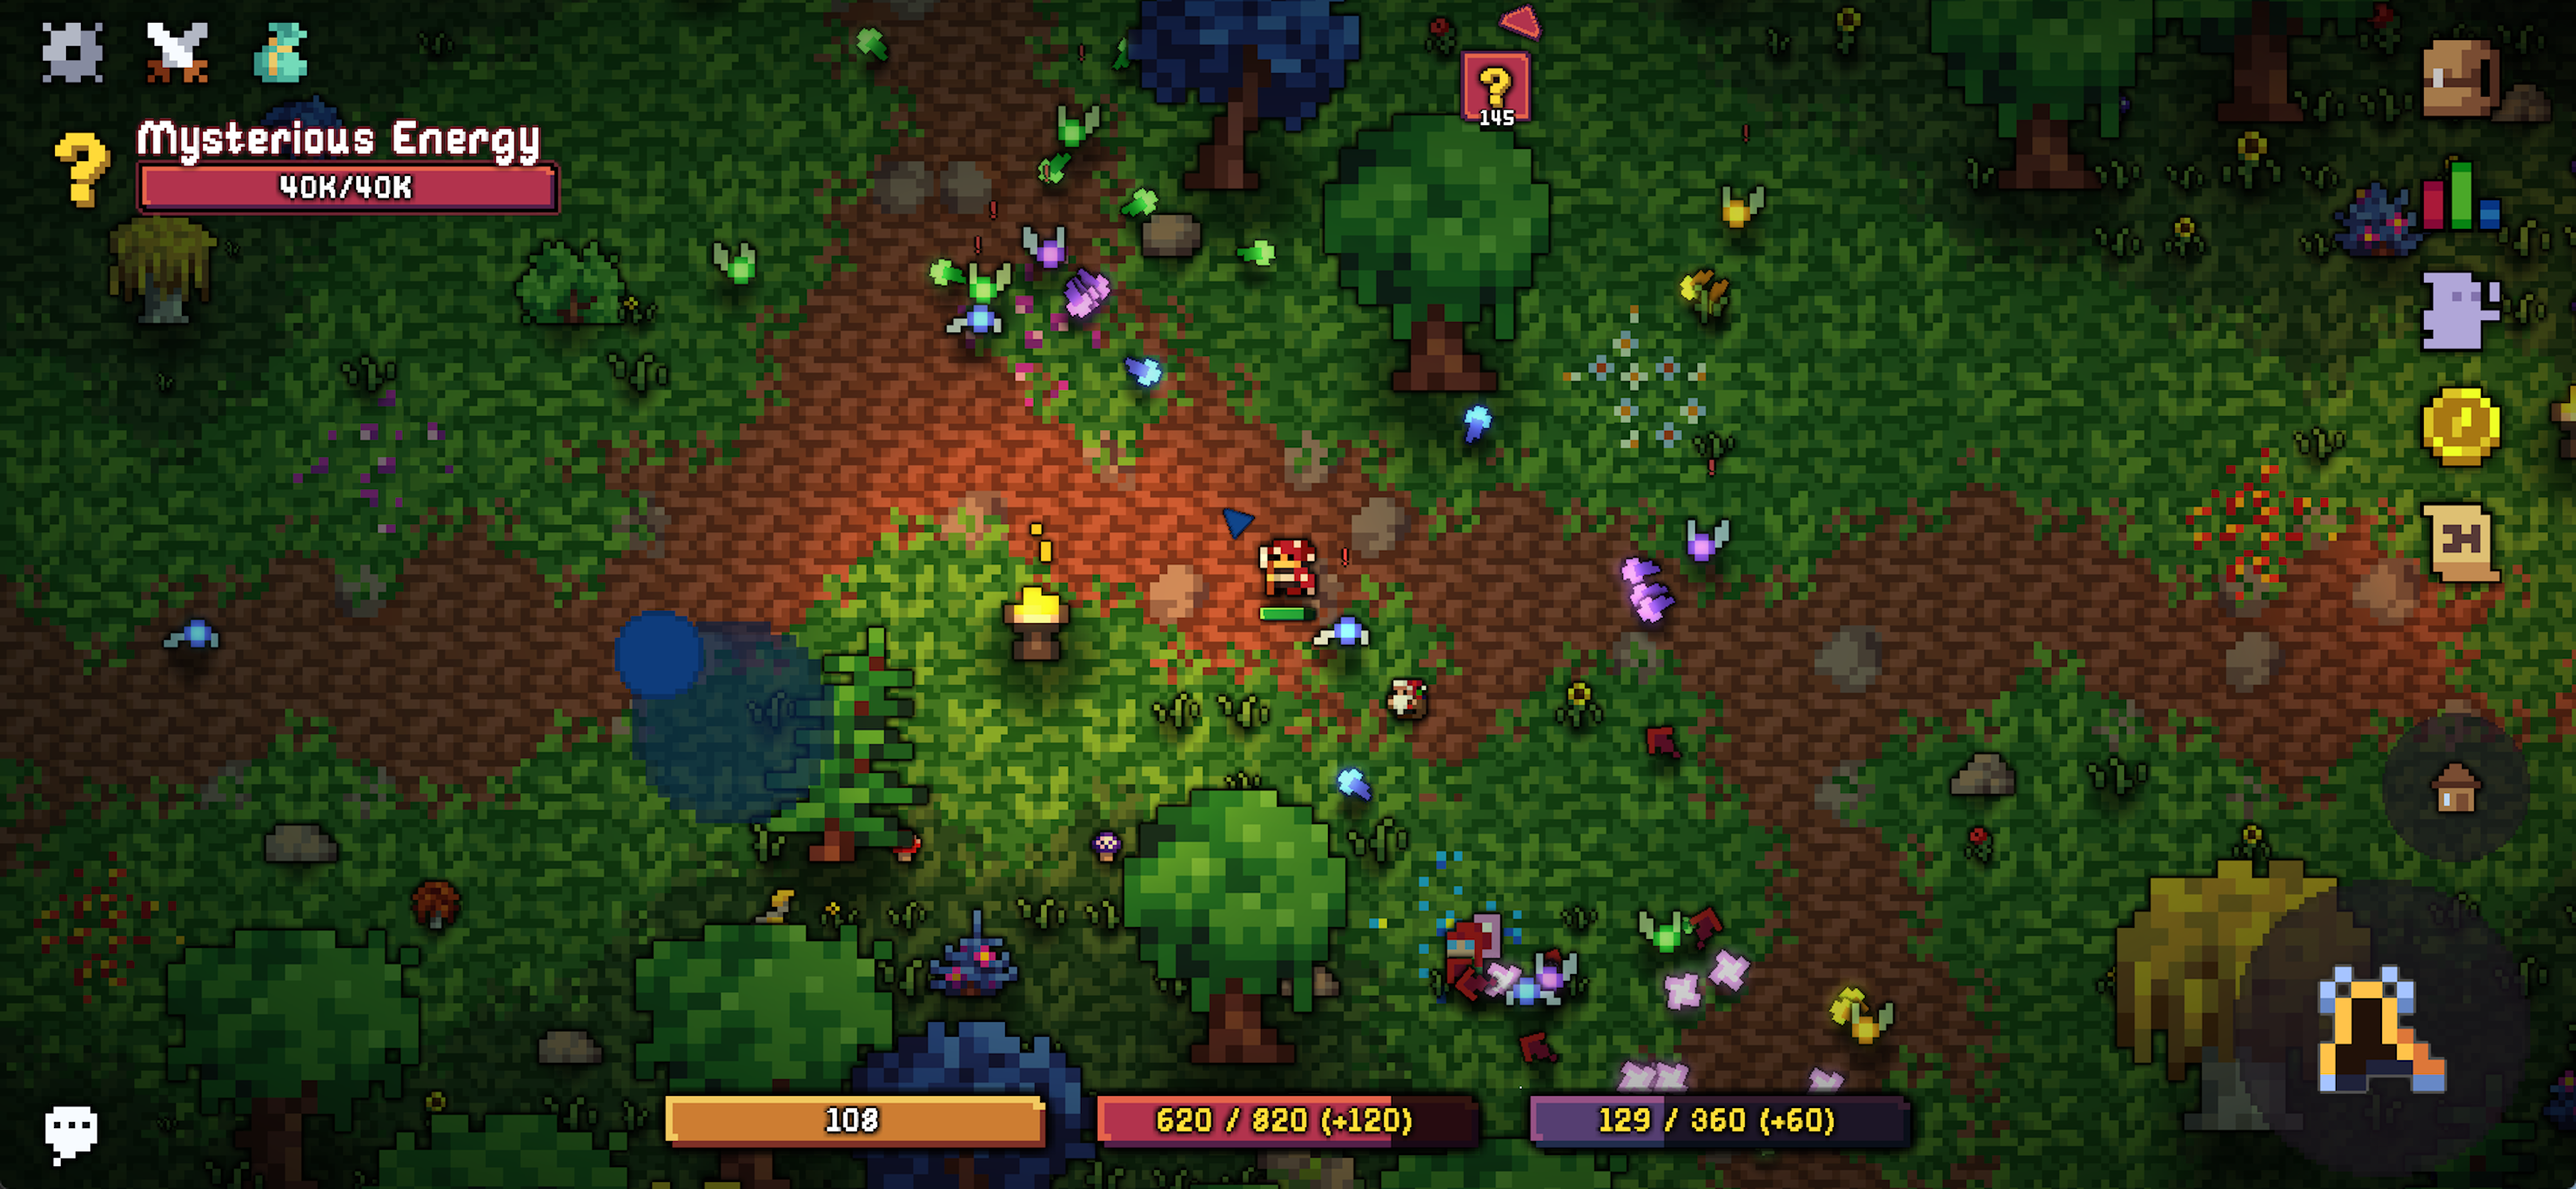 Darza's Dominion screenshot game